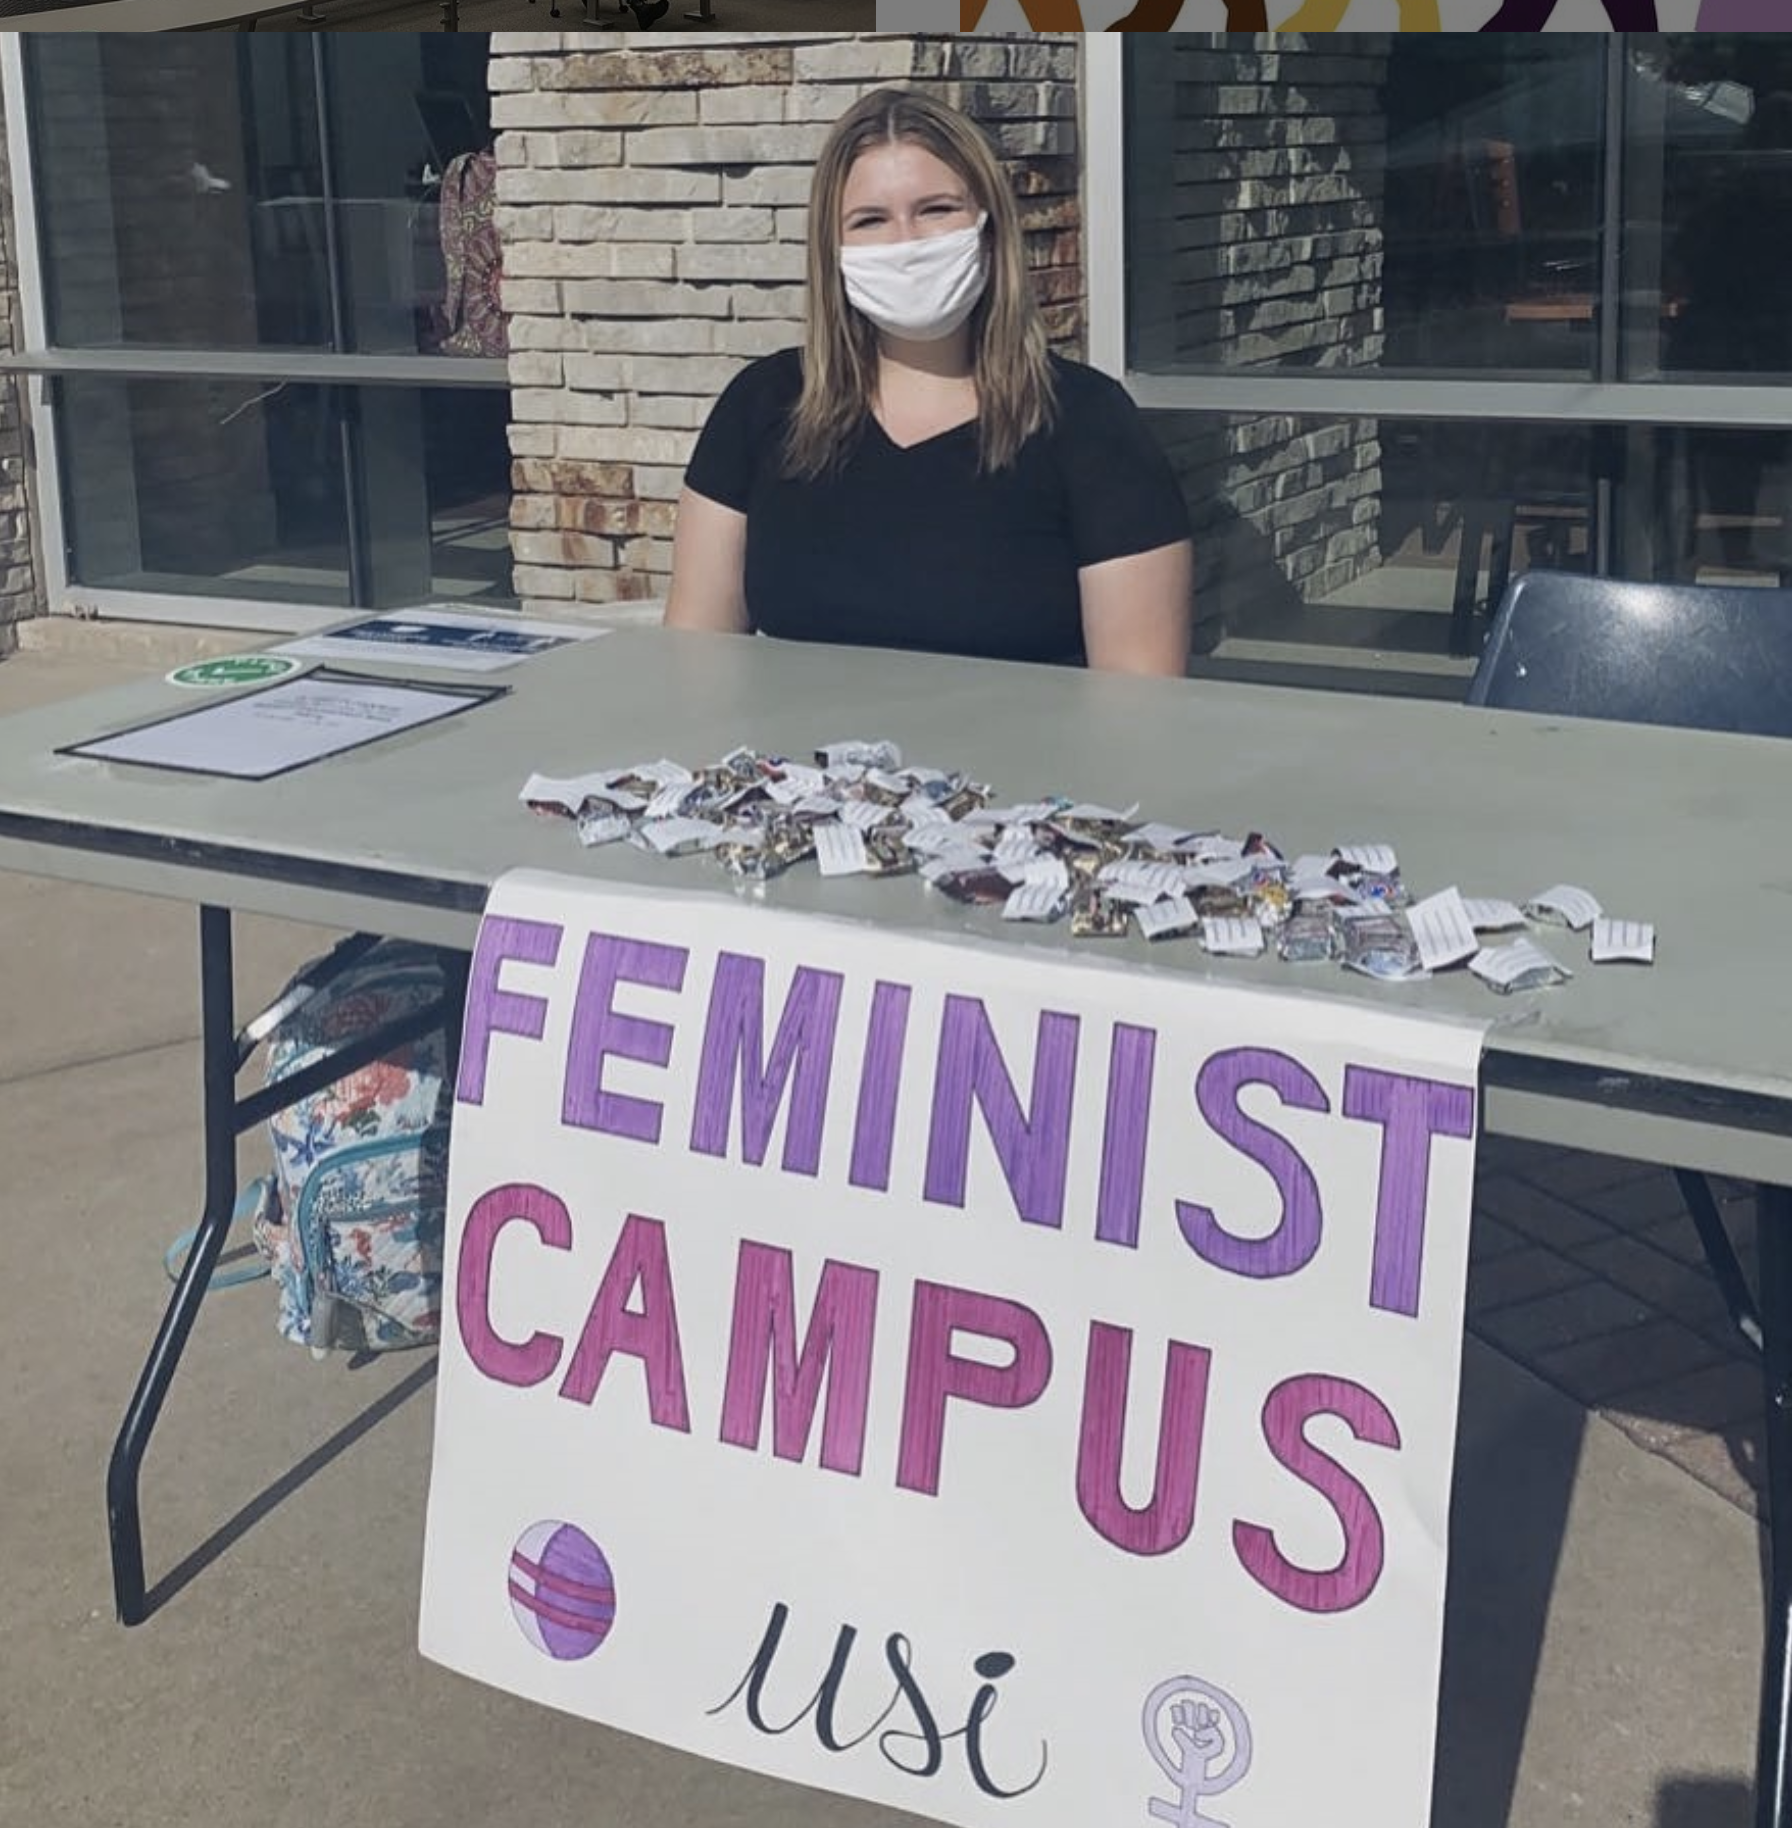 Feminist Campus